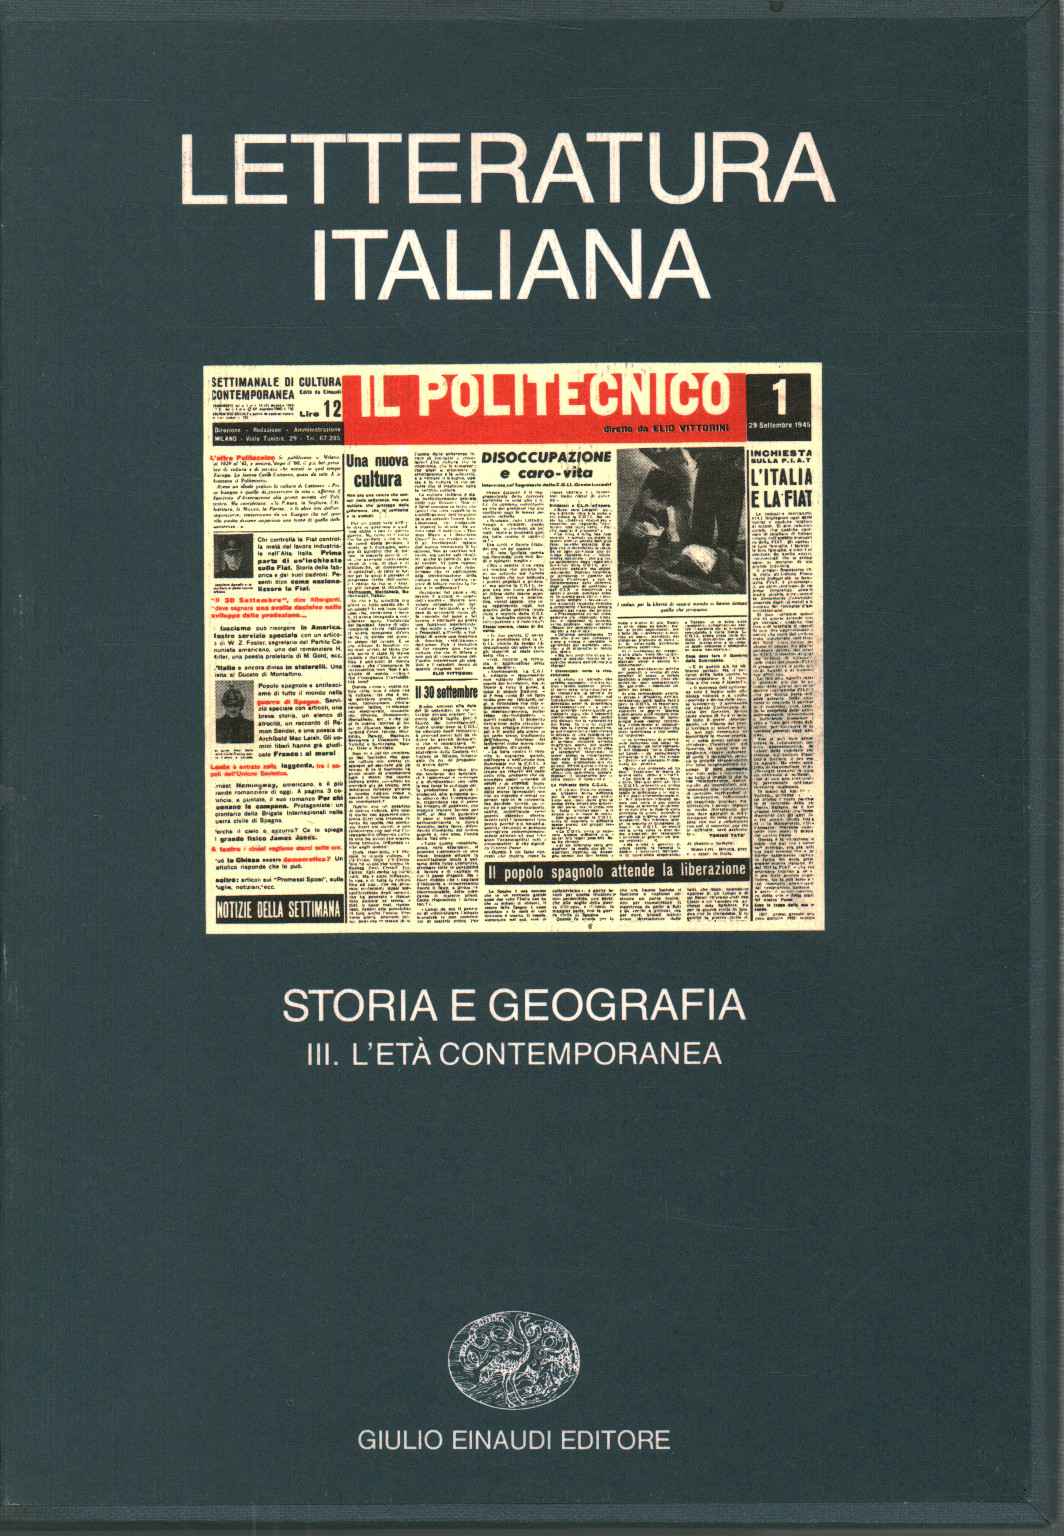 geografia e storia della letteratura italiana pdf files